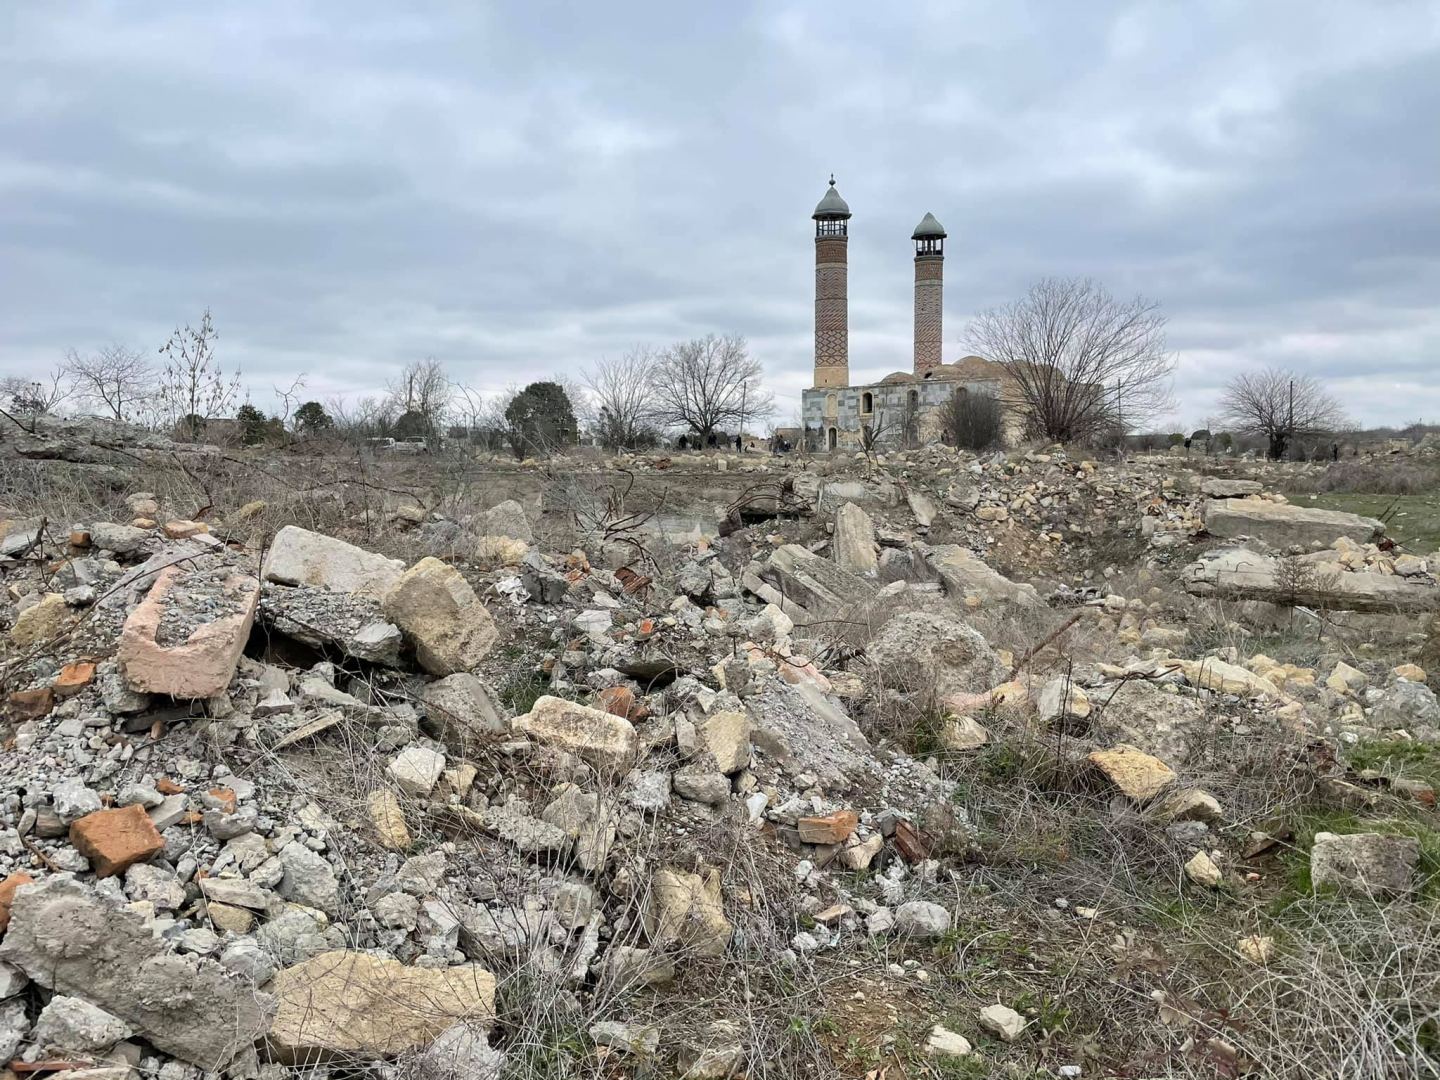 Таких тотальных разрушений не видел даже в сирийском Хомсе - украинский журналист об Агдаме